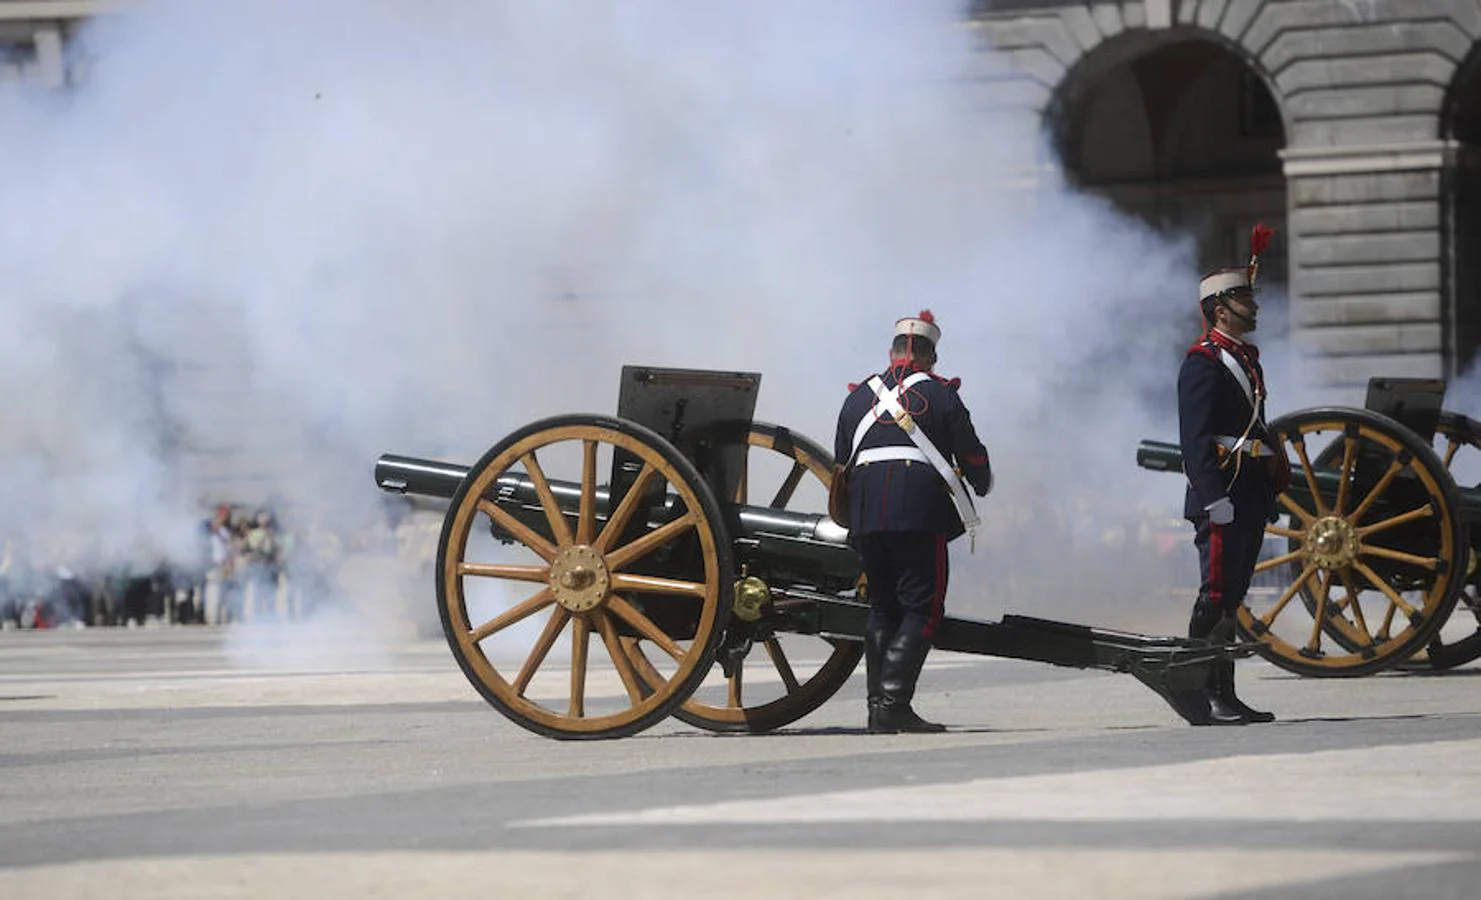 4. Artillería. Los cañones no podían faltar en este evento militar que se desarrolla mensualmente frente al Palacio Real